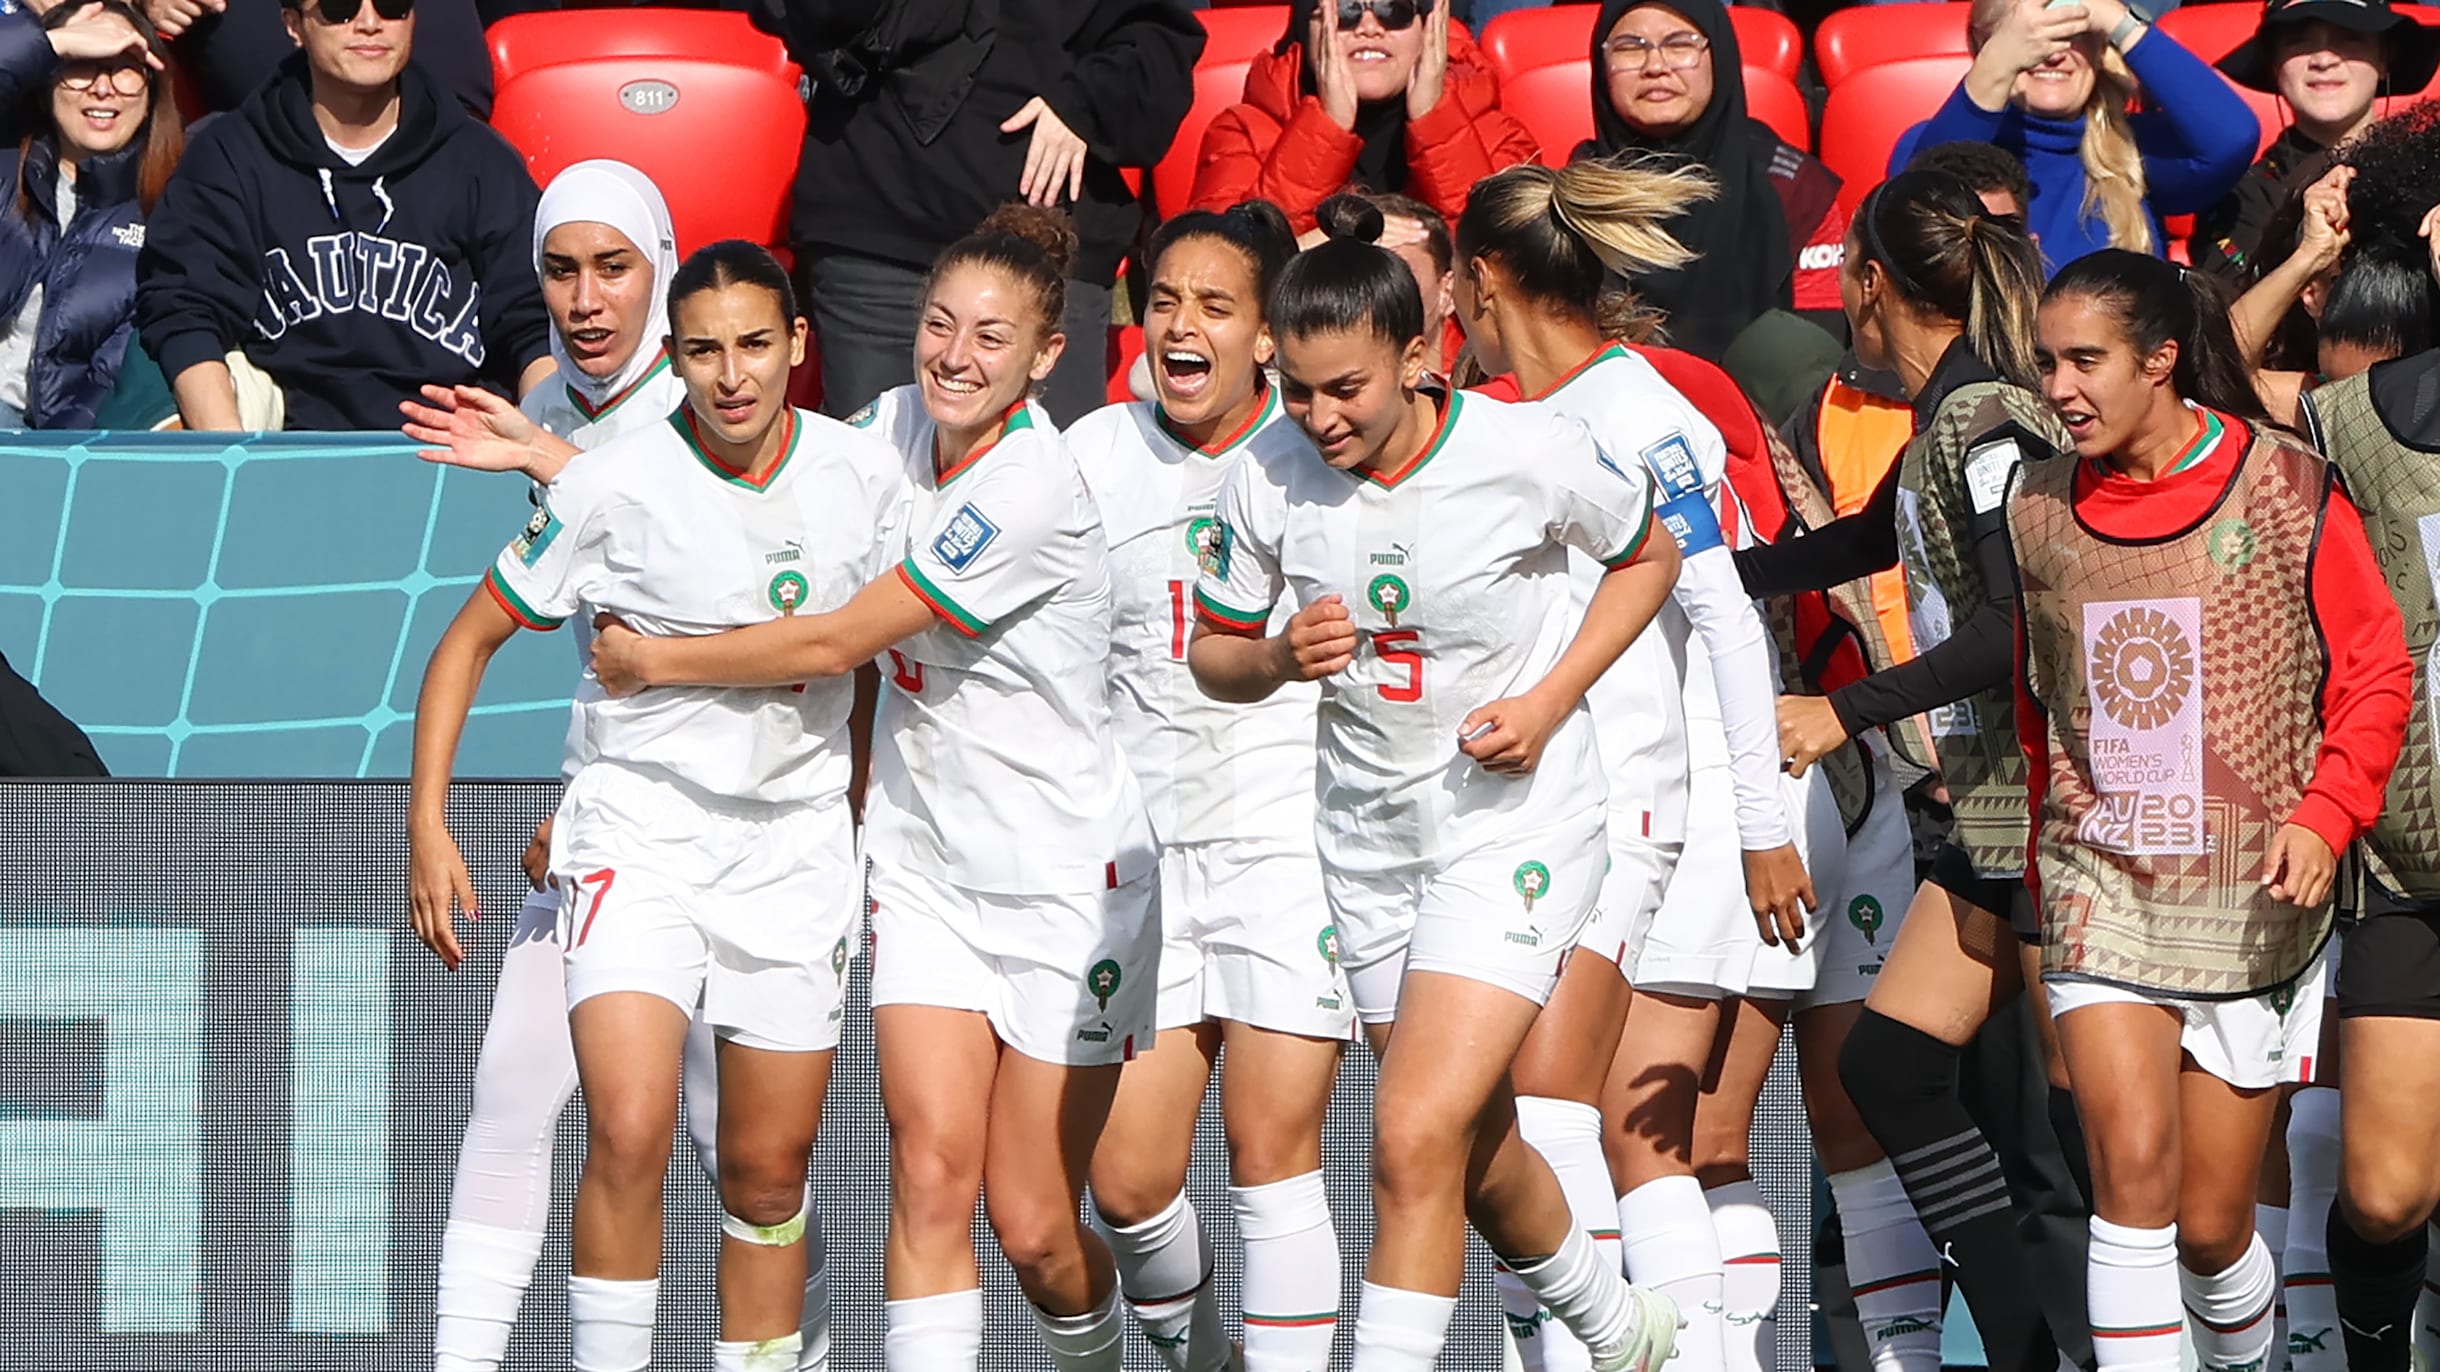 Maroc / Rétrospectives 2023 : Le football rayonne, l’athlétisme retrouve son éclat et l’art noble s’élève à l’échelle mondiale